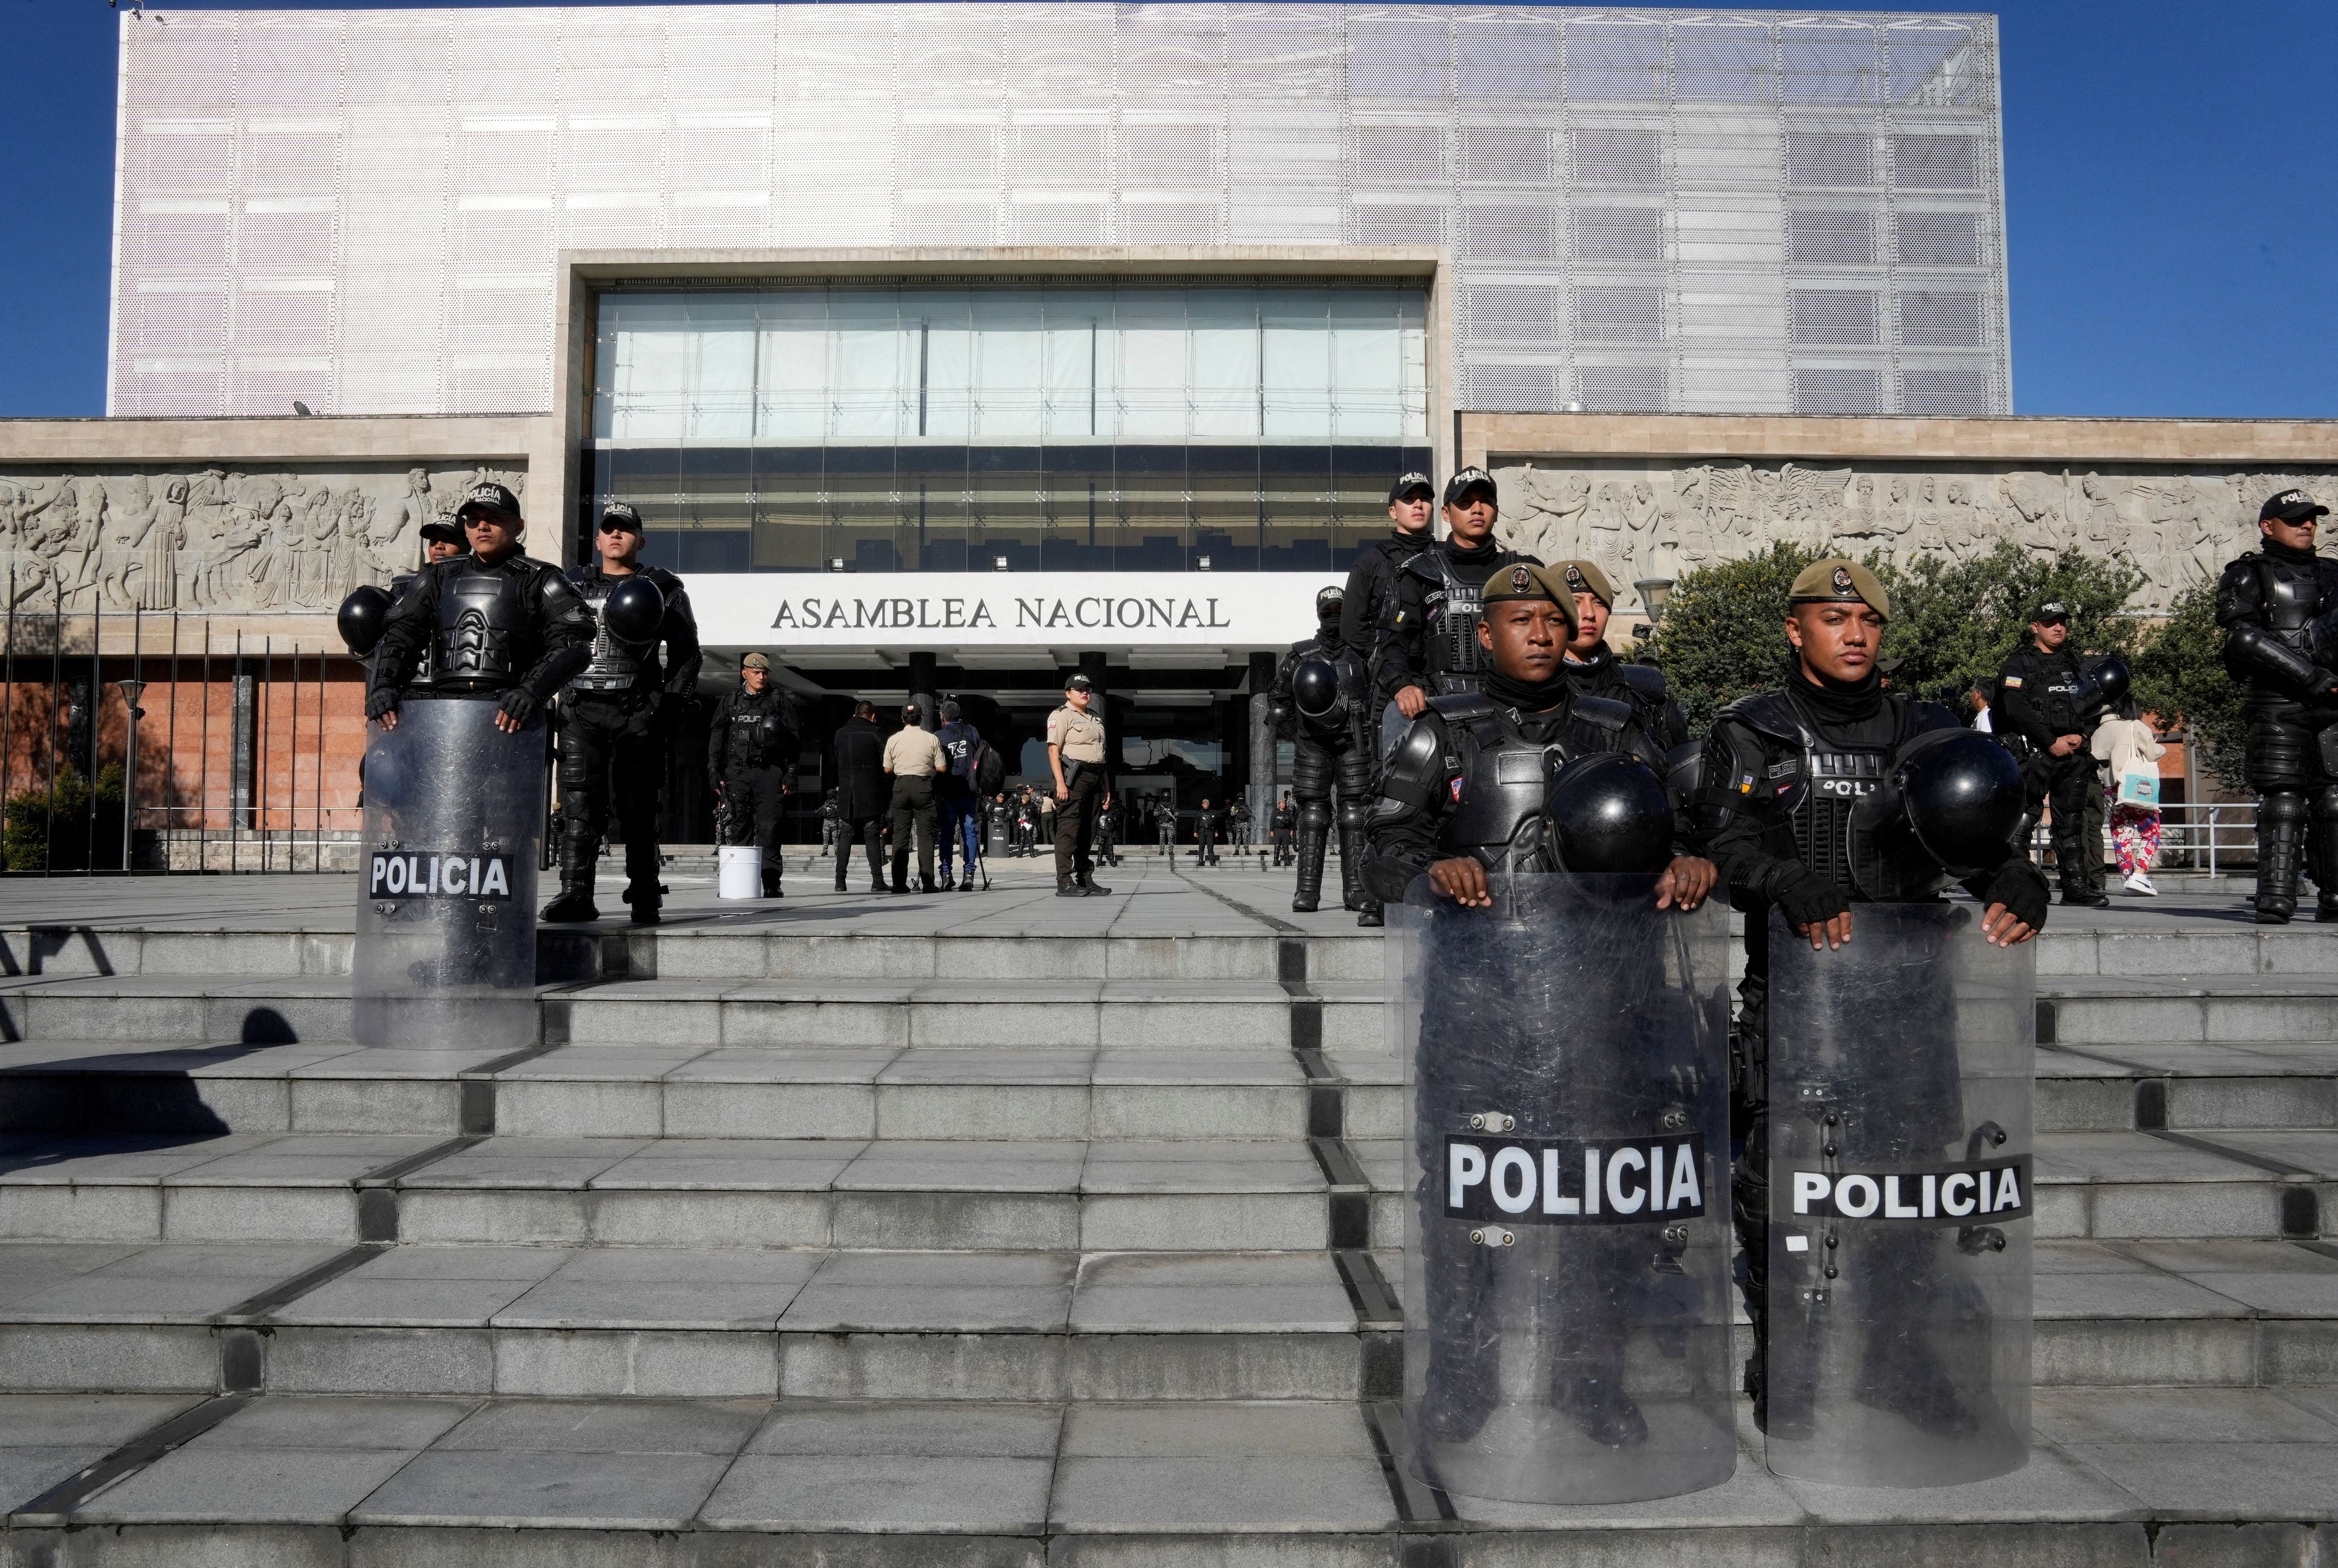 La Asamblea Nacional bajo custodia (REUTERS/Cristina Vega)